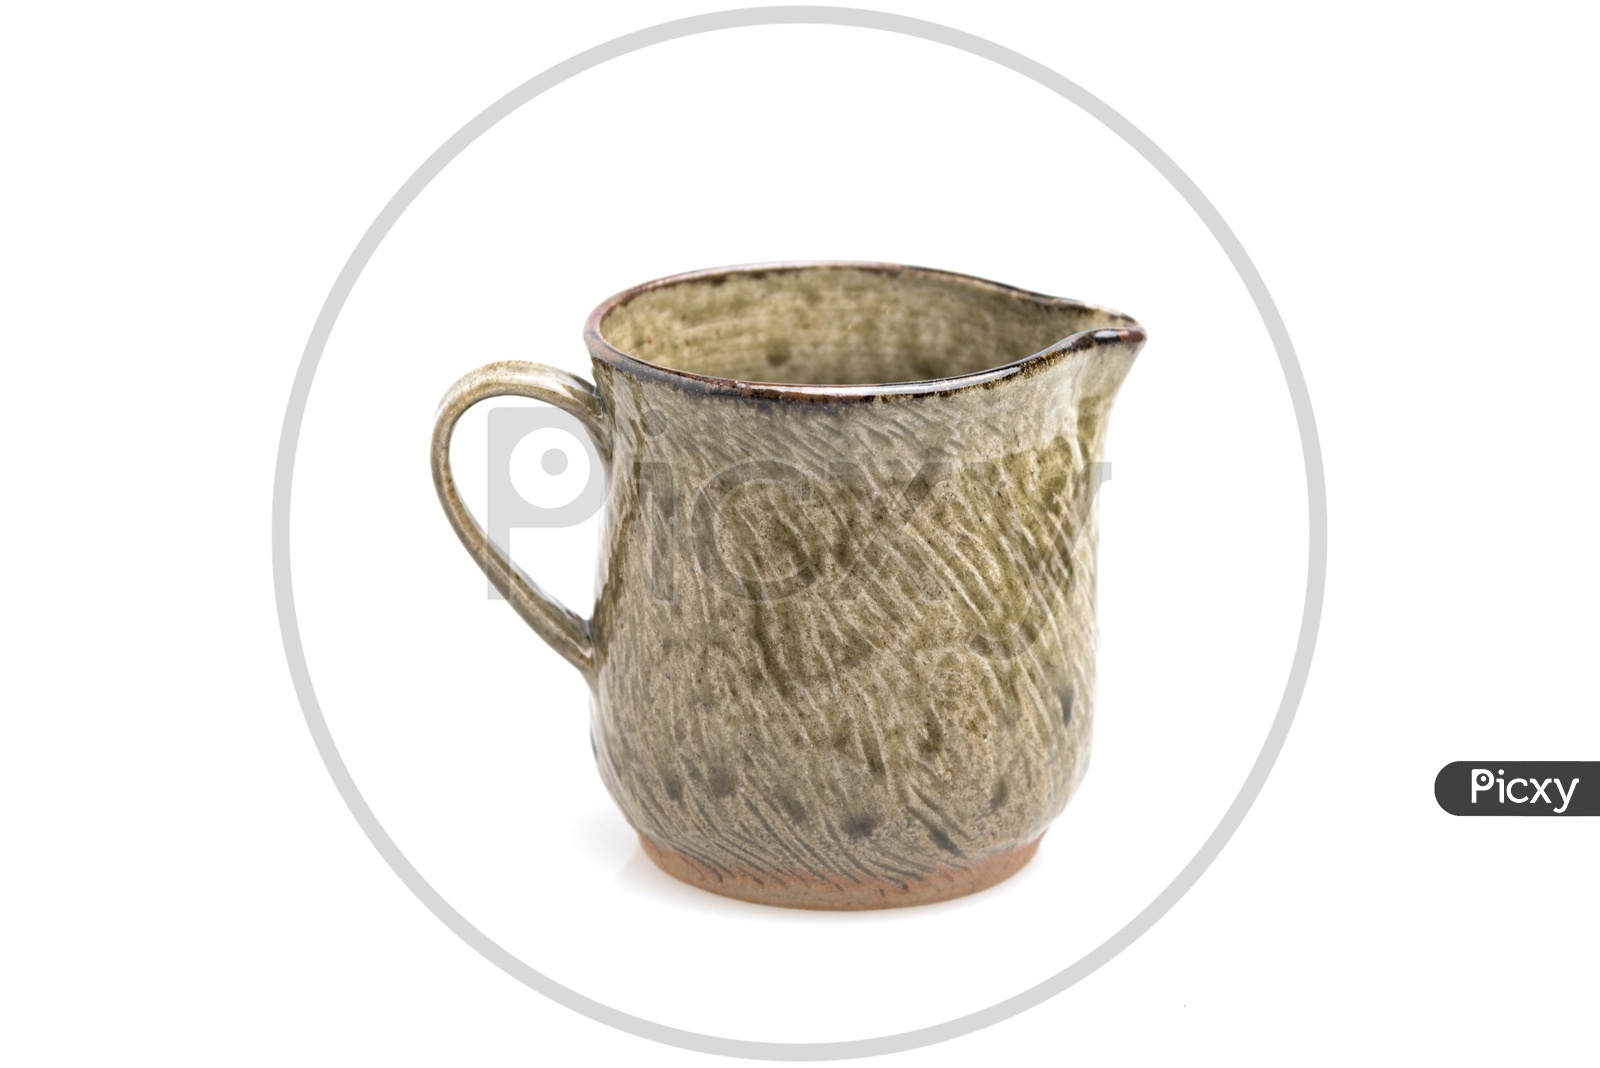 A ceramic coffee dripper pot